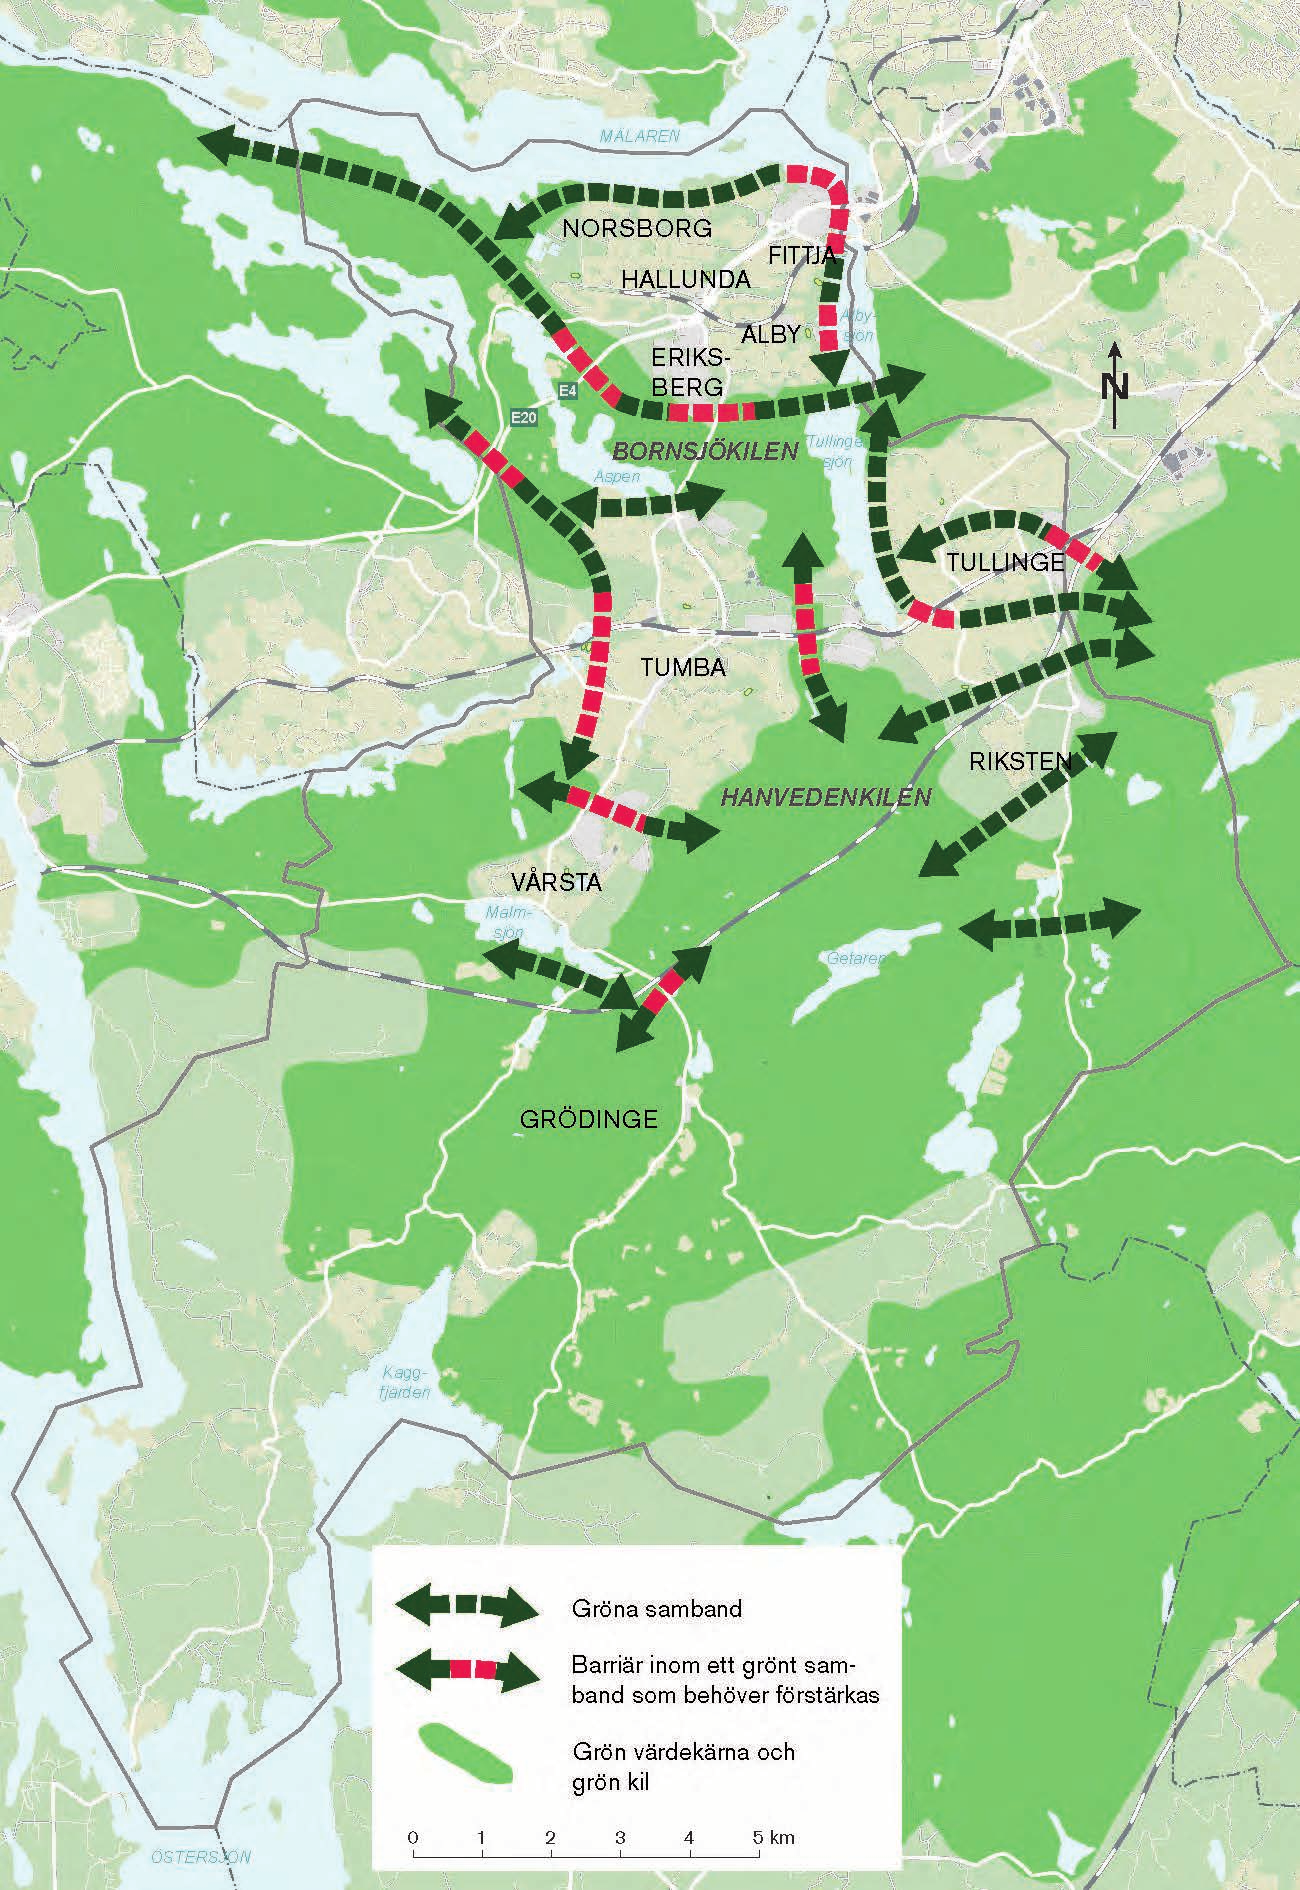 Figur 7: Kartan visar kommunens gröna kilar och